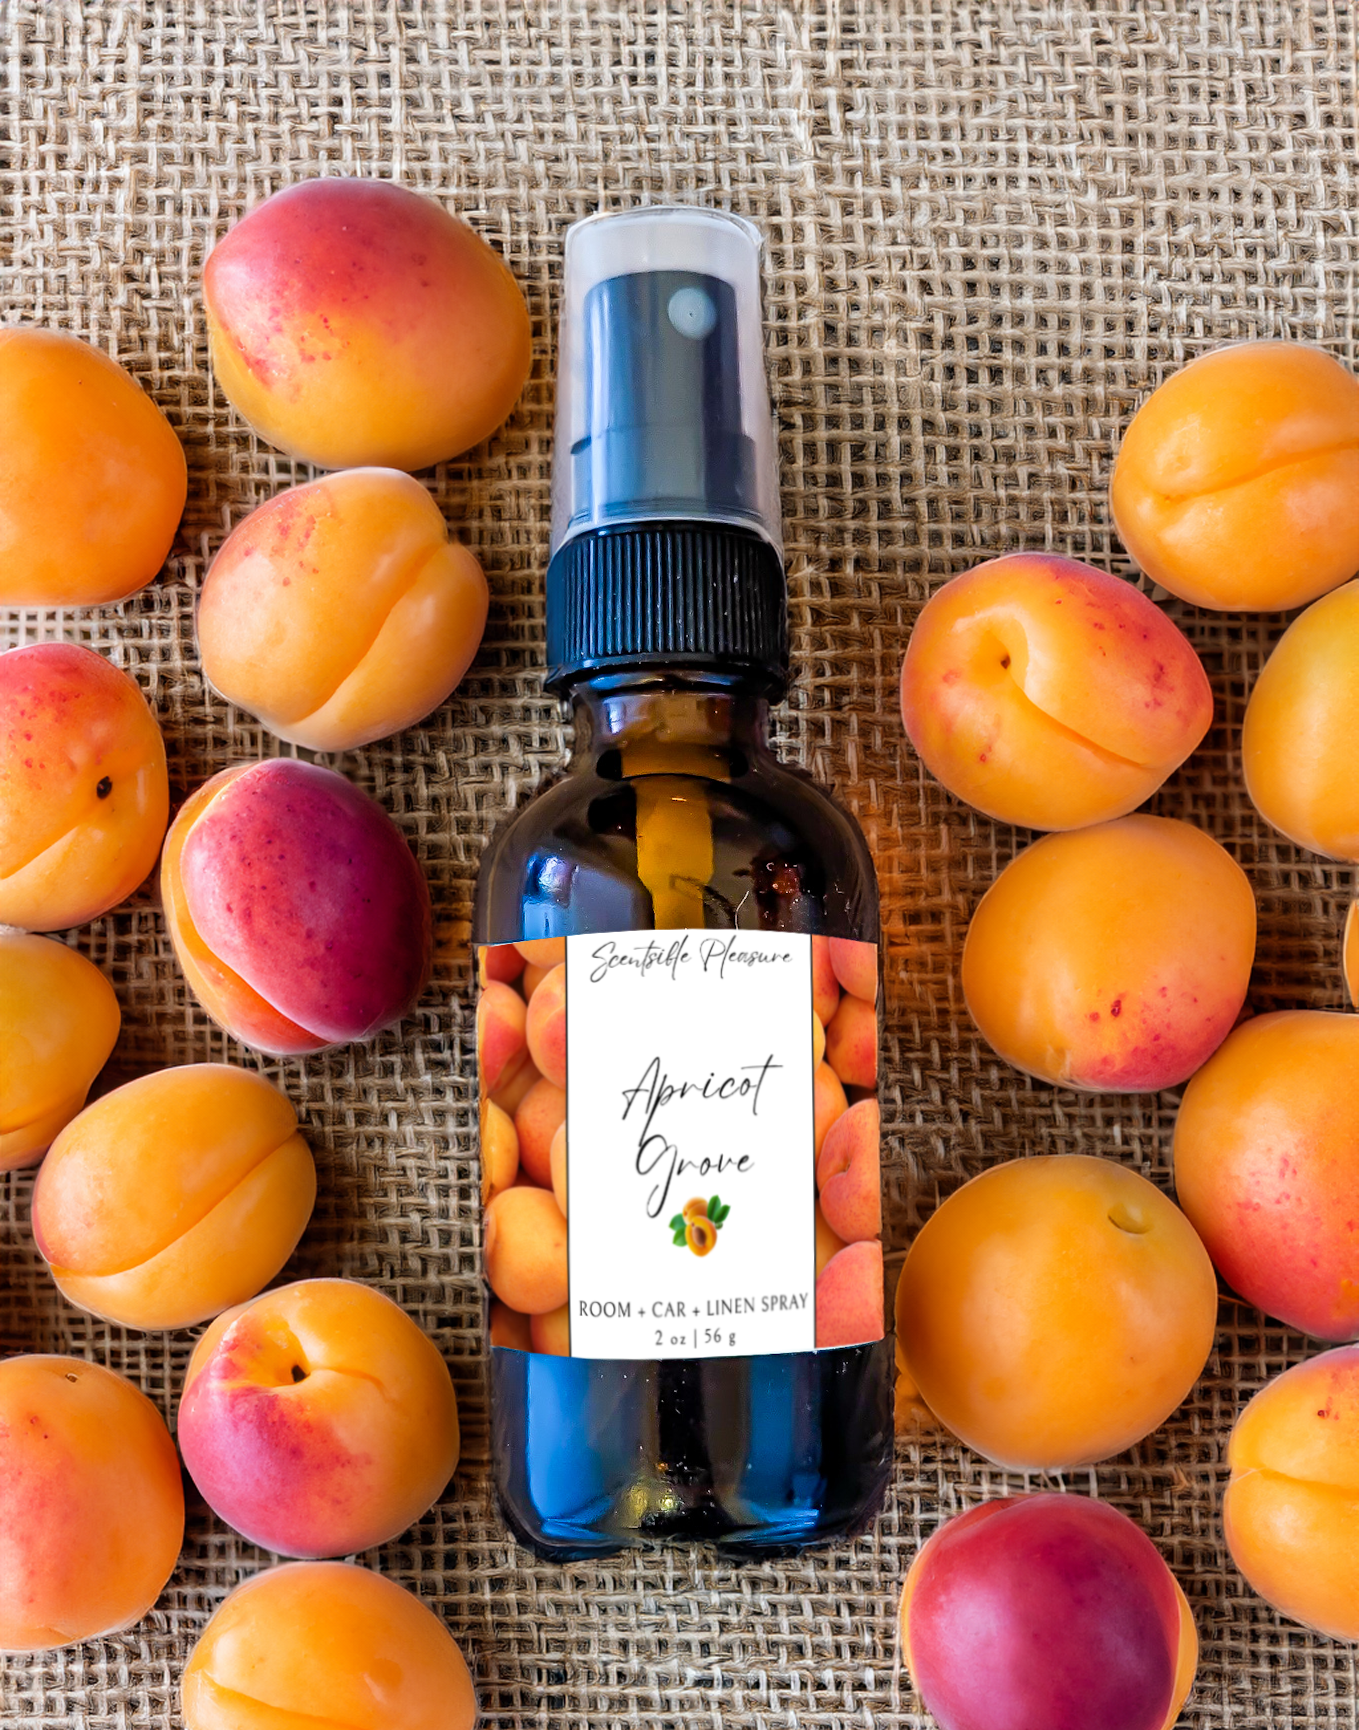 Apricot Grove Spray